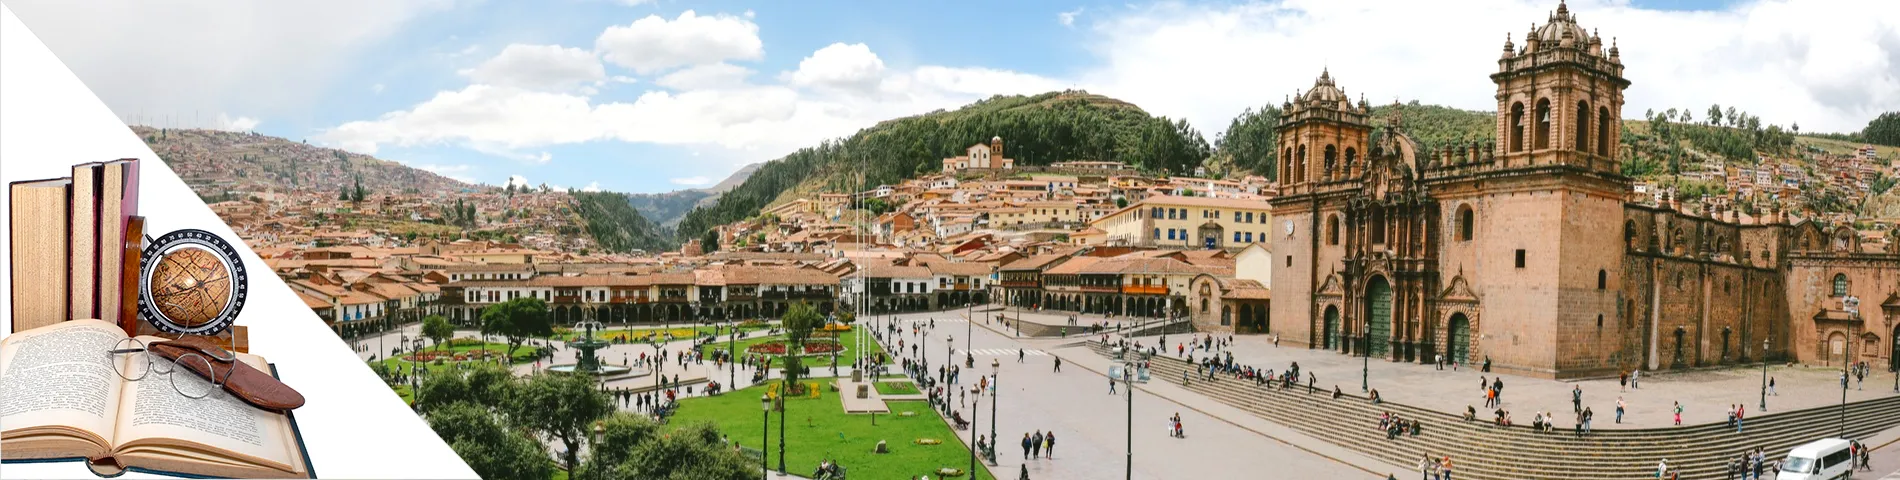 Cuzco - Spanska & konst/litteratur